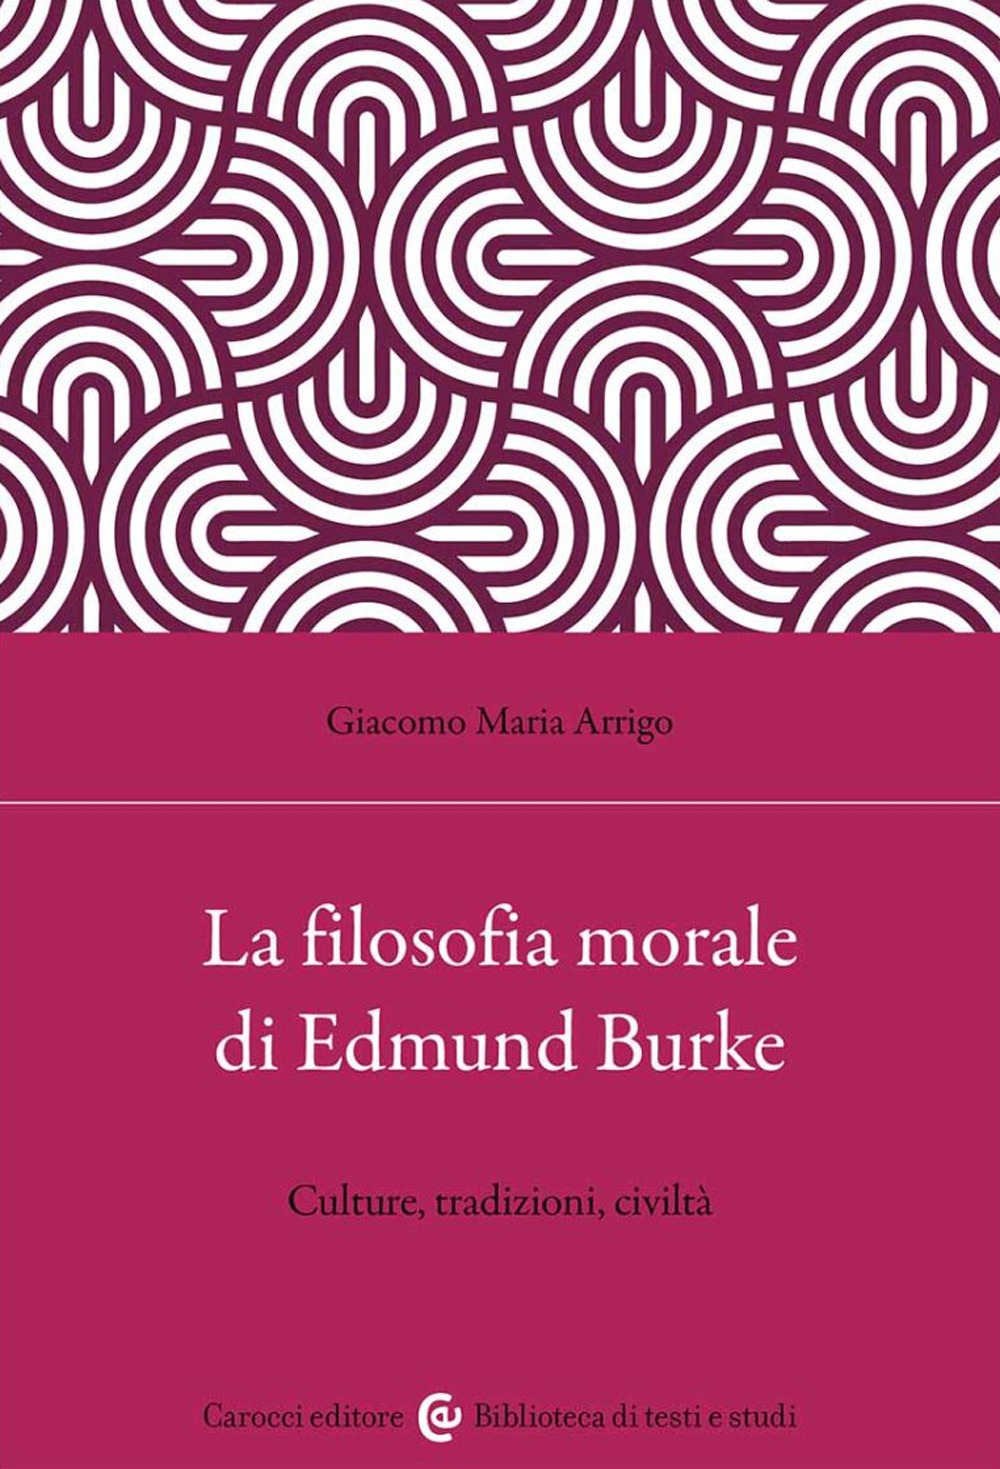 La filosofia morale di Edmund Burke. Culture, tradizioni, civiltà